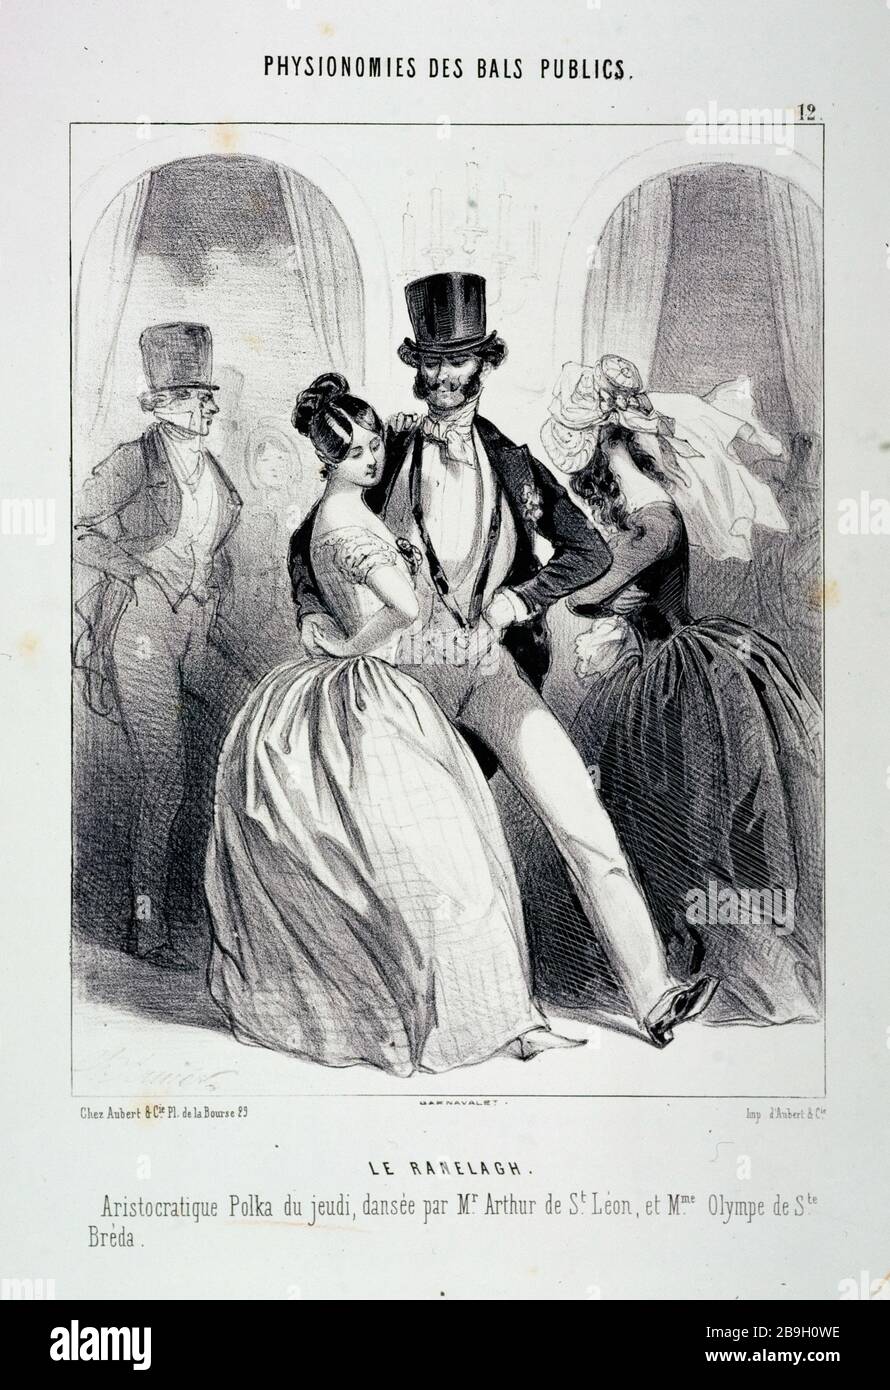 Countenances OF PUBLIC DANCES - THE RANELAGH Charles Vernier (1831-1887). 'Physionomies des bals publics - Le Ranelagh'. Gravure. Paris, musée Carnavalet. Stock Photo